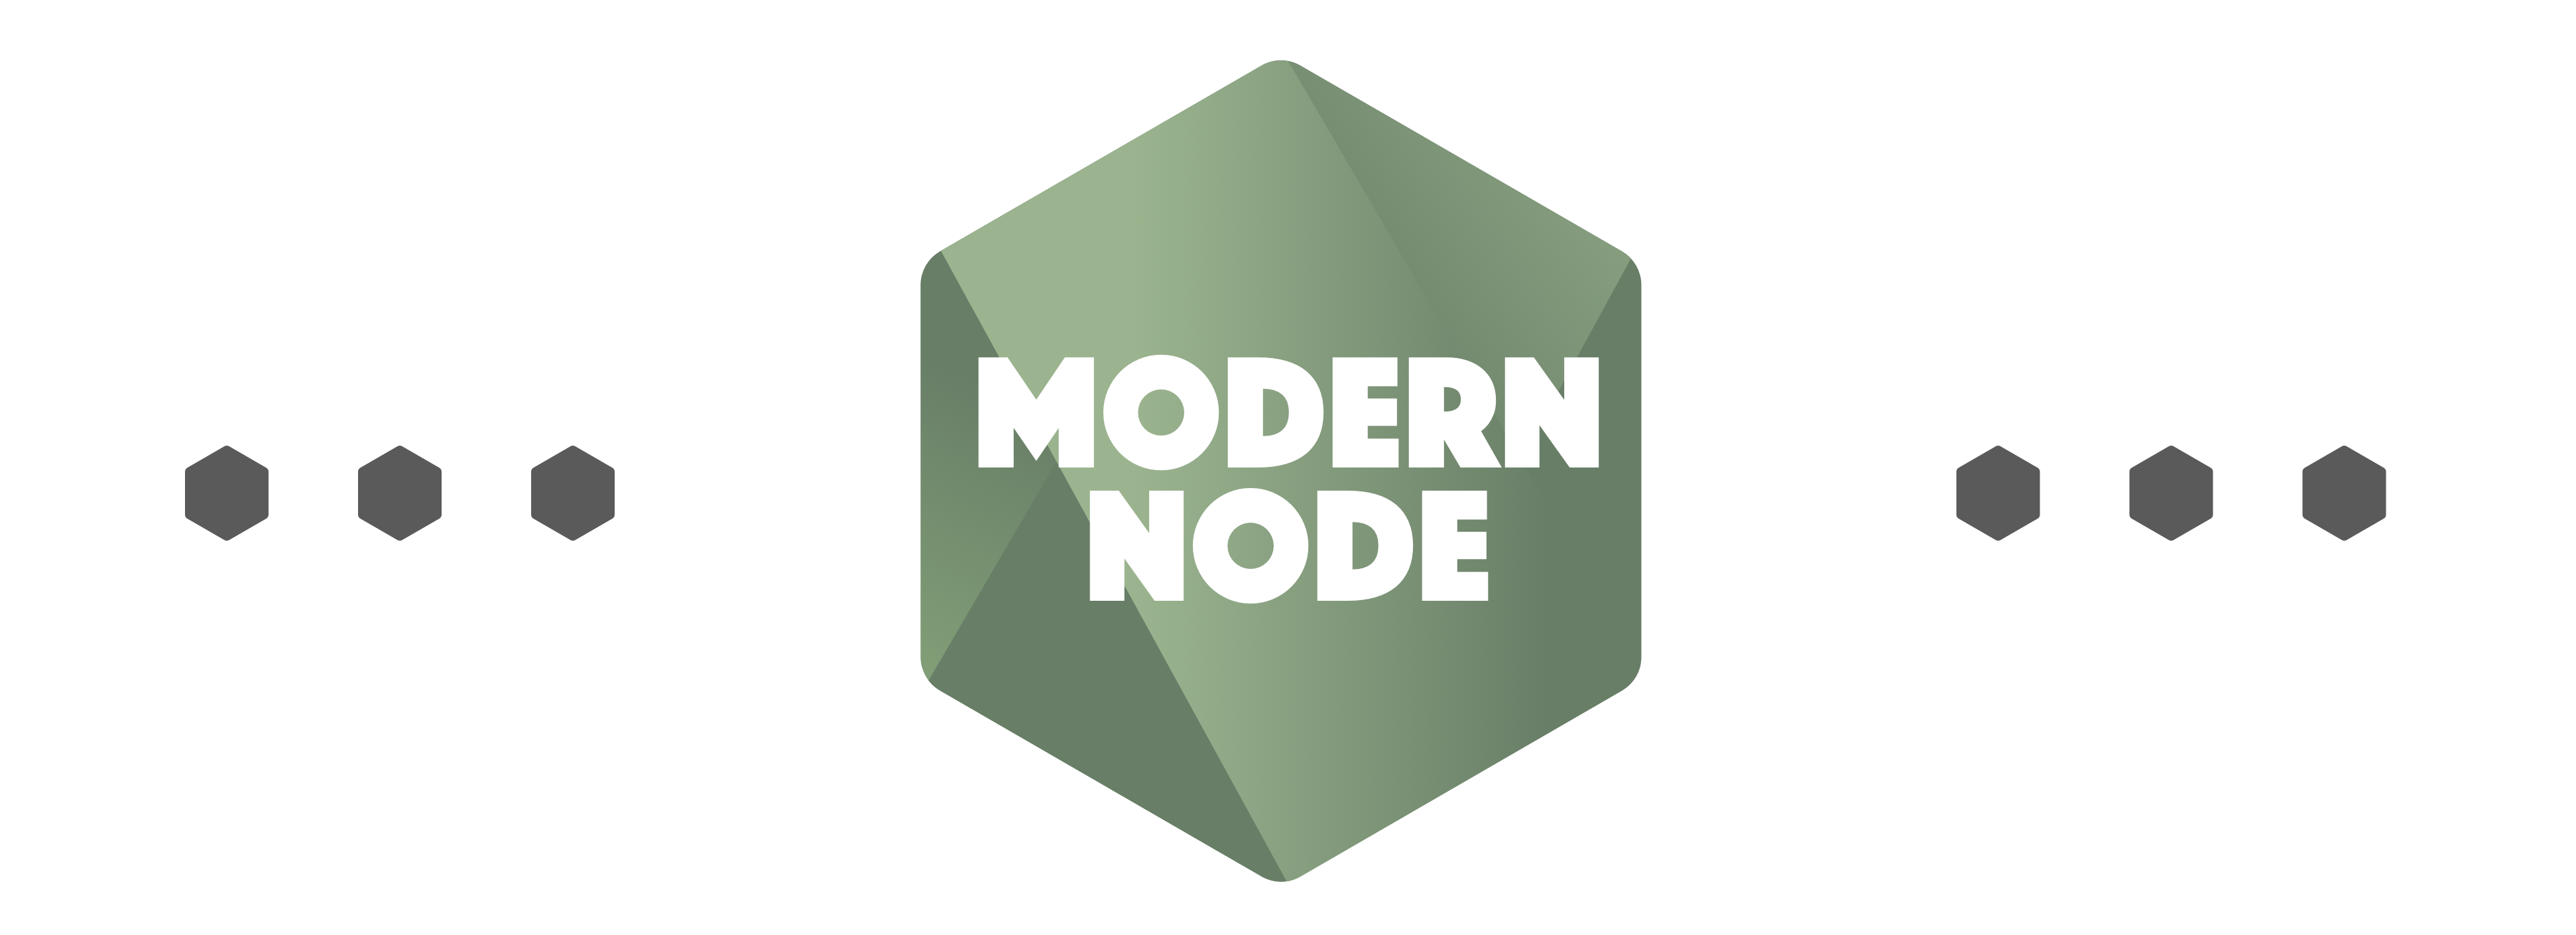 modern-node